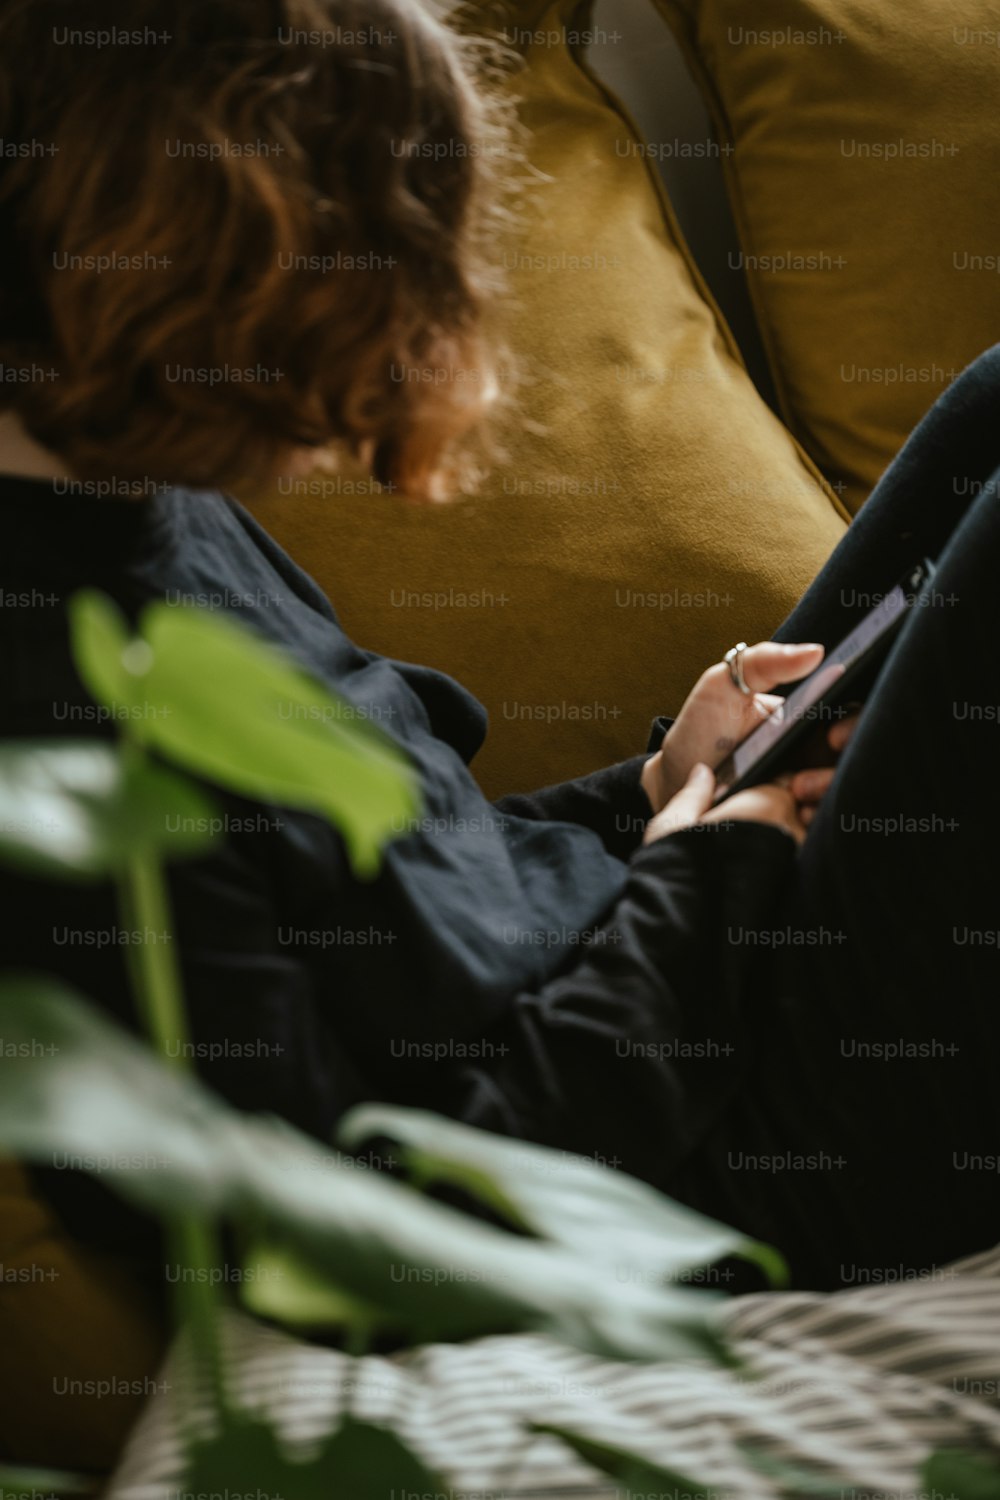 Una donna seduta su un divano che guarda il suo cellulare